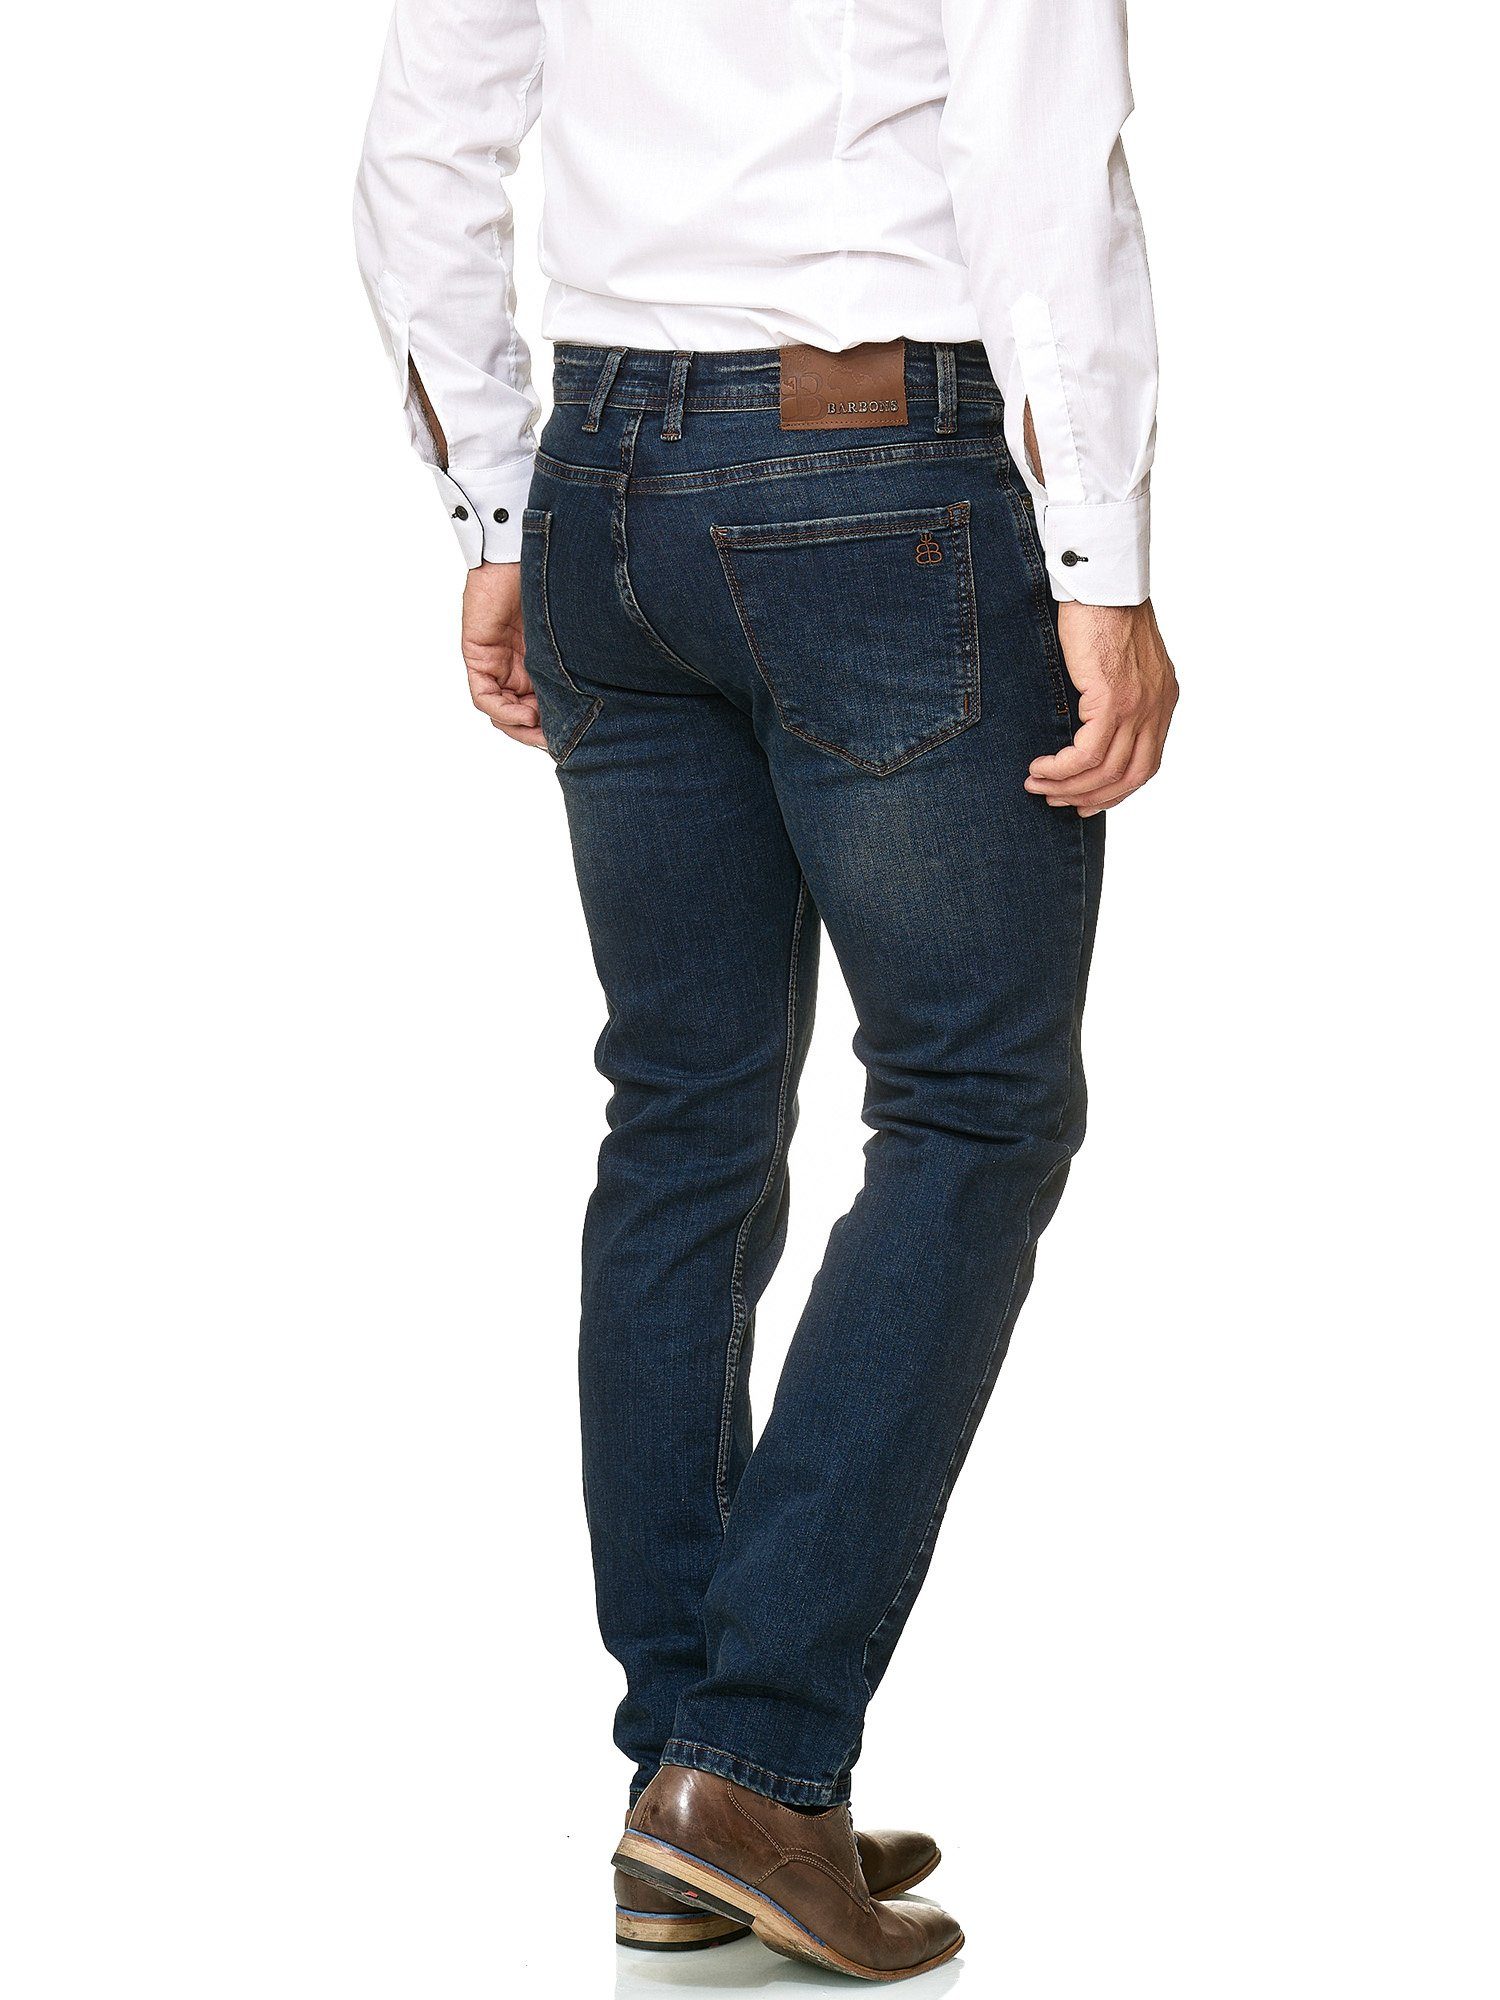 BARBONS 5-Pocket-Jeans Herren Fit 01-Navy Regular 5-Pocket Design